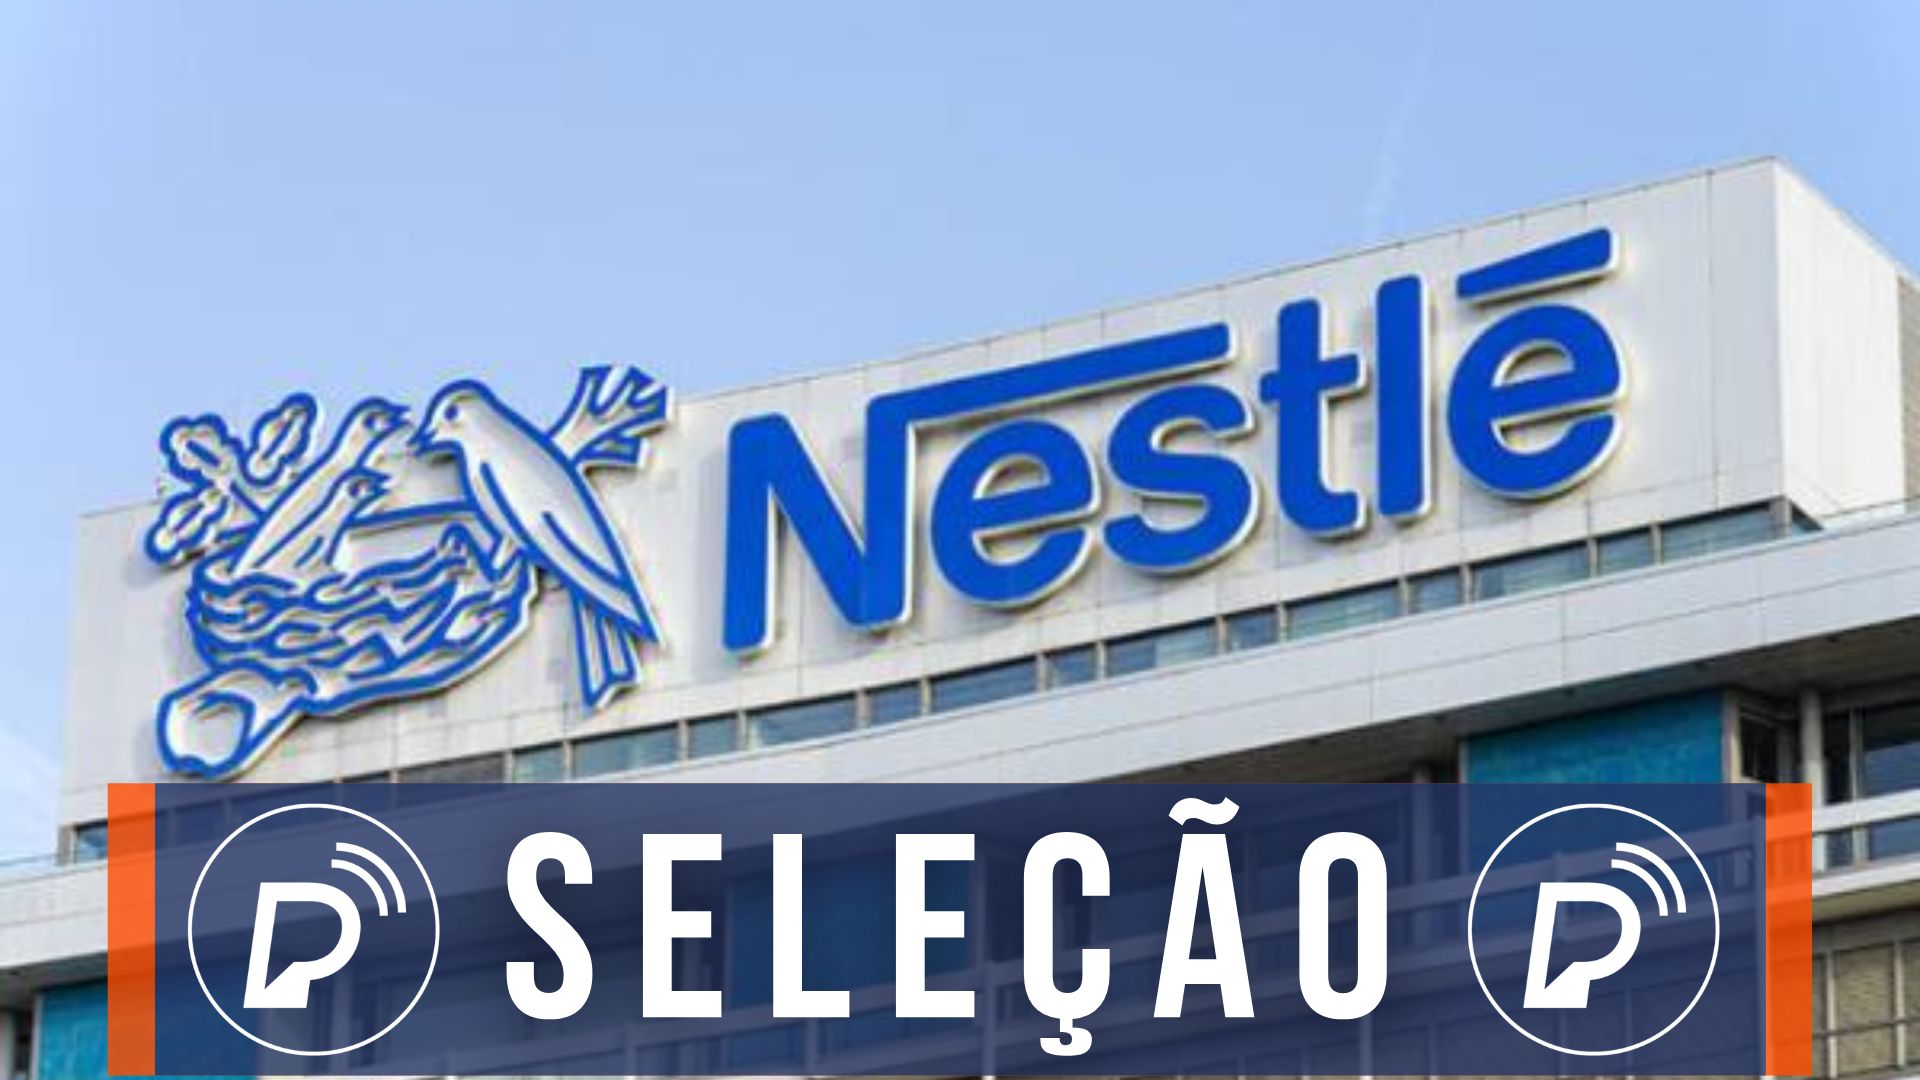 NESTLÉ abre PROCESSO SELETIVO com mais de 2.800 VAGAS no Brasil e exterior.